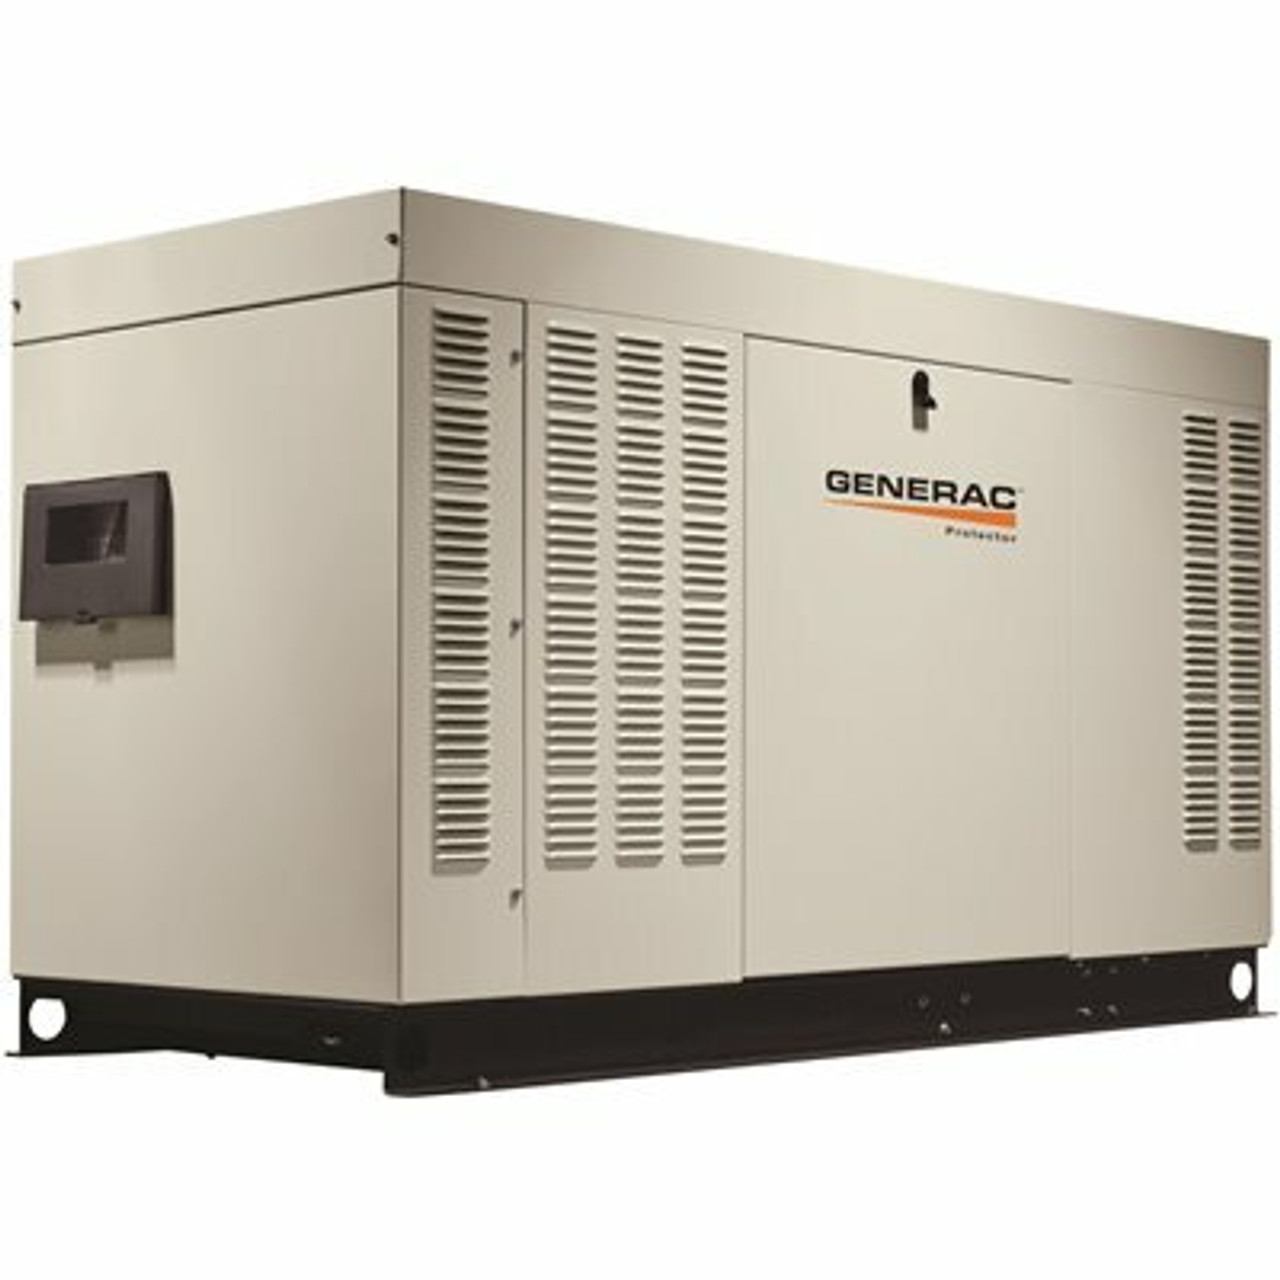 Generac 45,000-Watt 120-Volt/240-Volt Liquid Cooled Standby Generator Single Phase With Aluminum Enclosure - 206105901